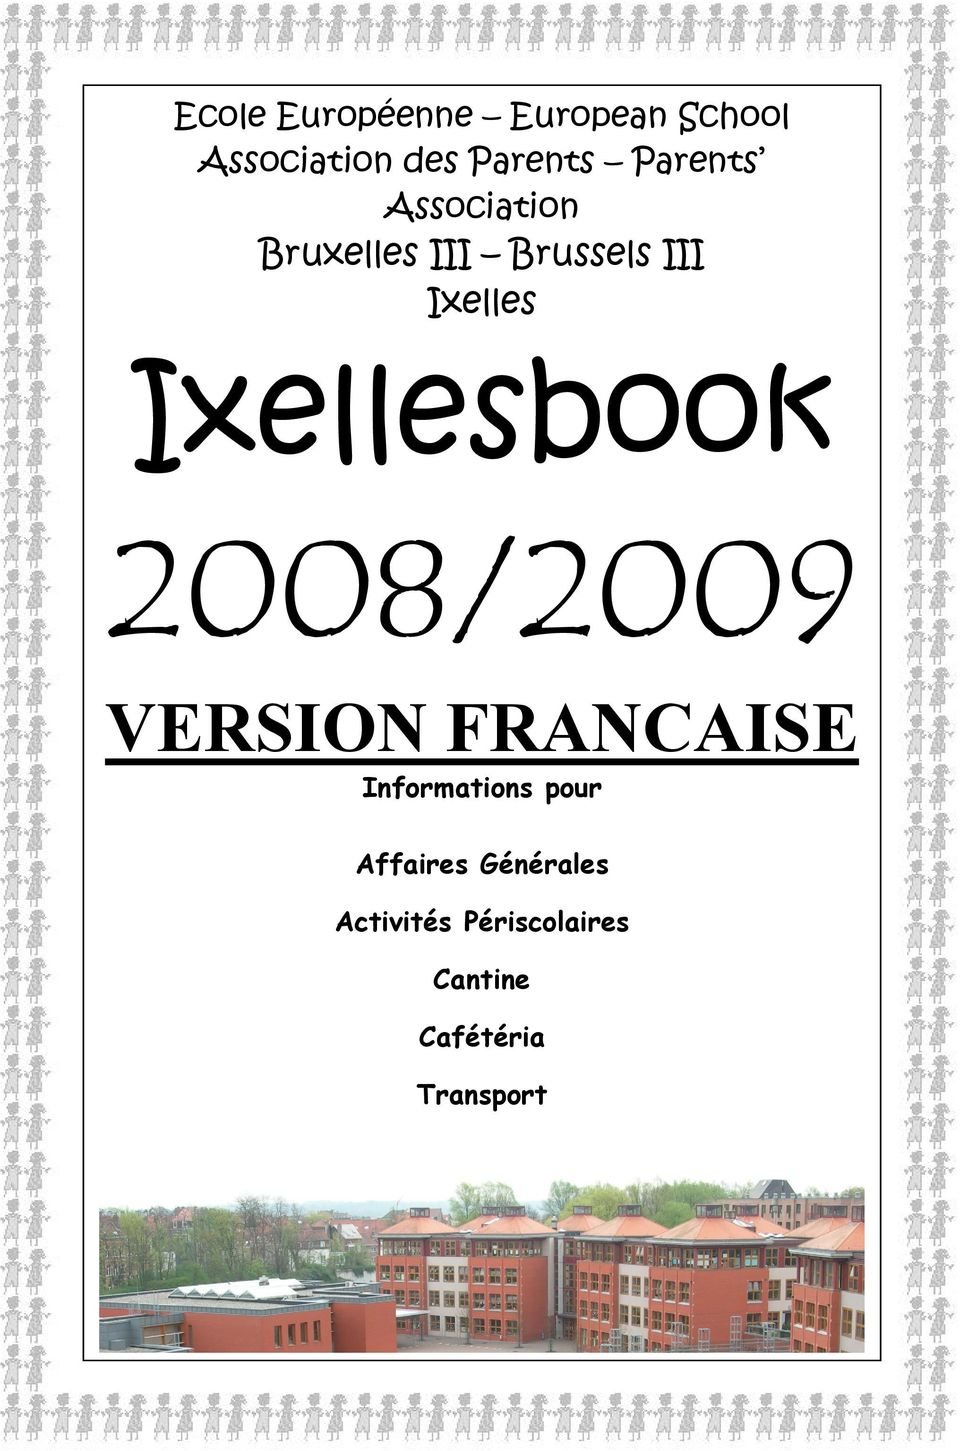 Ixellesbook 2008/2009 VERSION FRANCAISE Informations pour